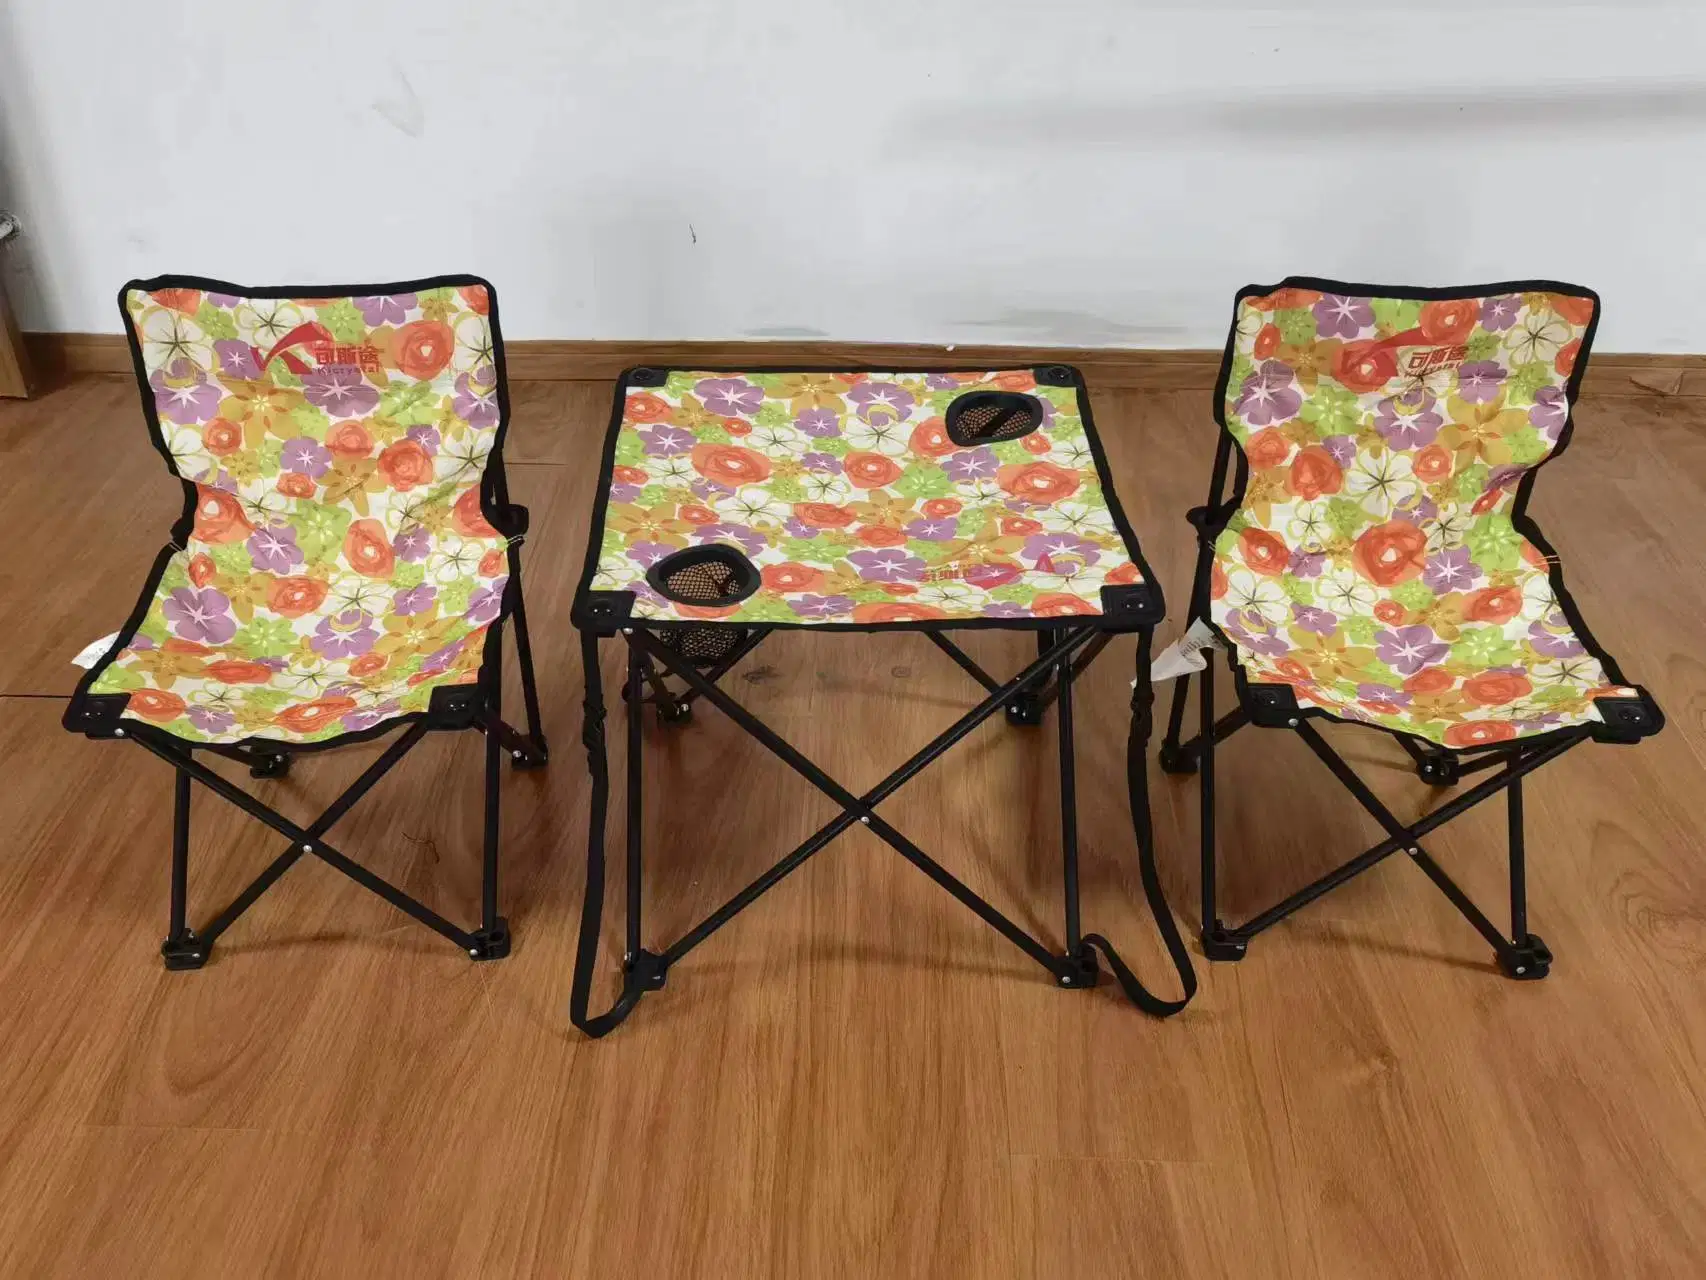 Outdoor Table pliante pique-nique Camping pique-nique Portable Table et chaise Set Table toile du marché de nuit petite table de blocage de calage